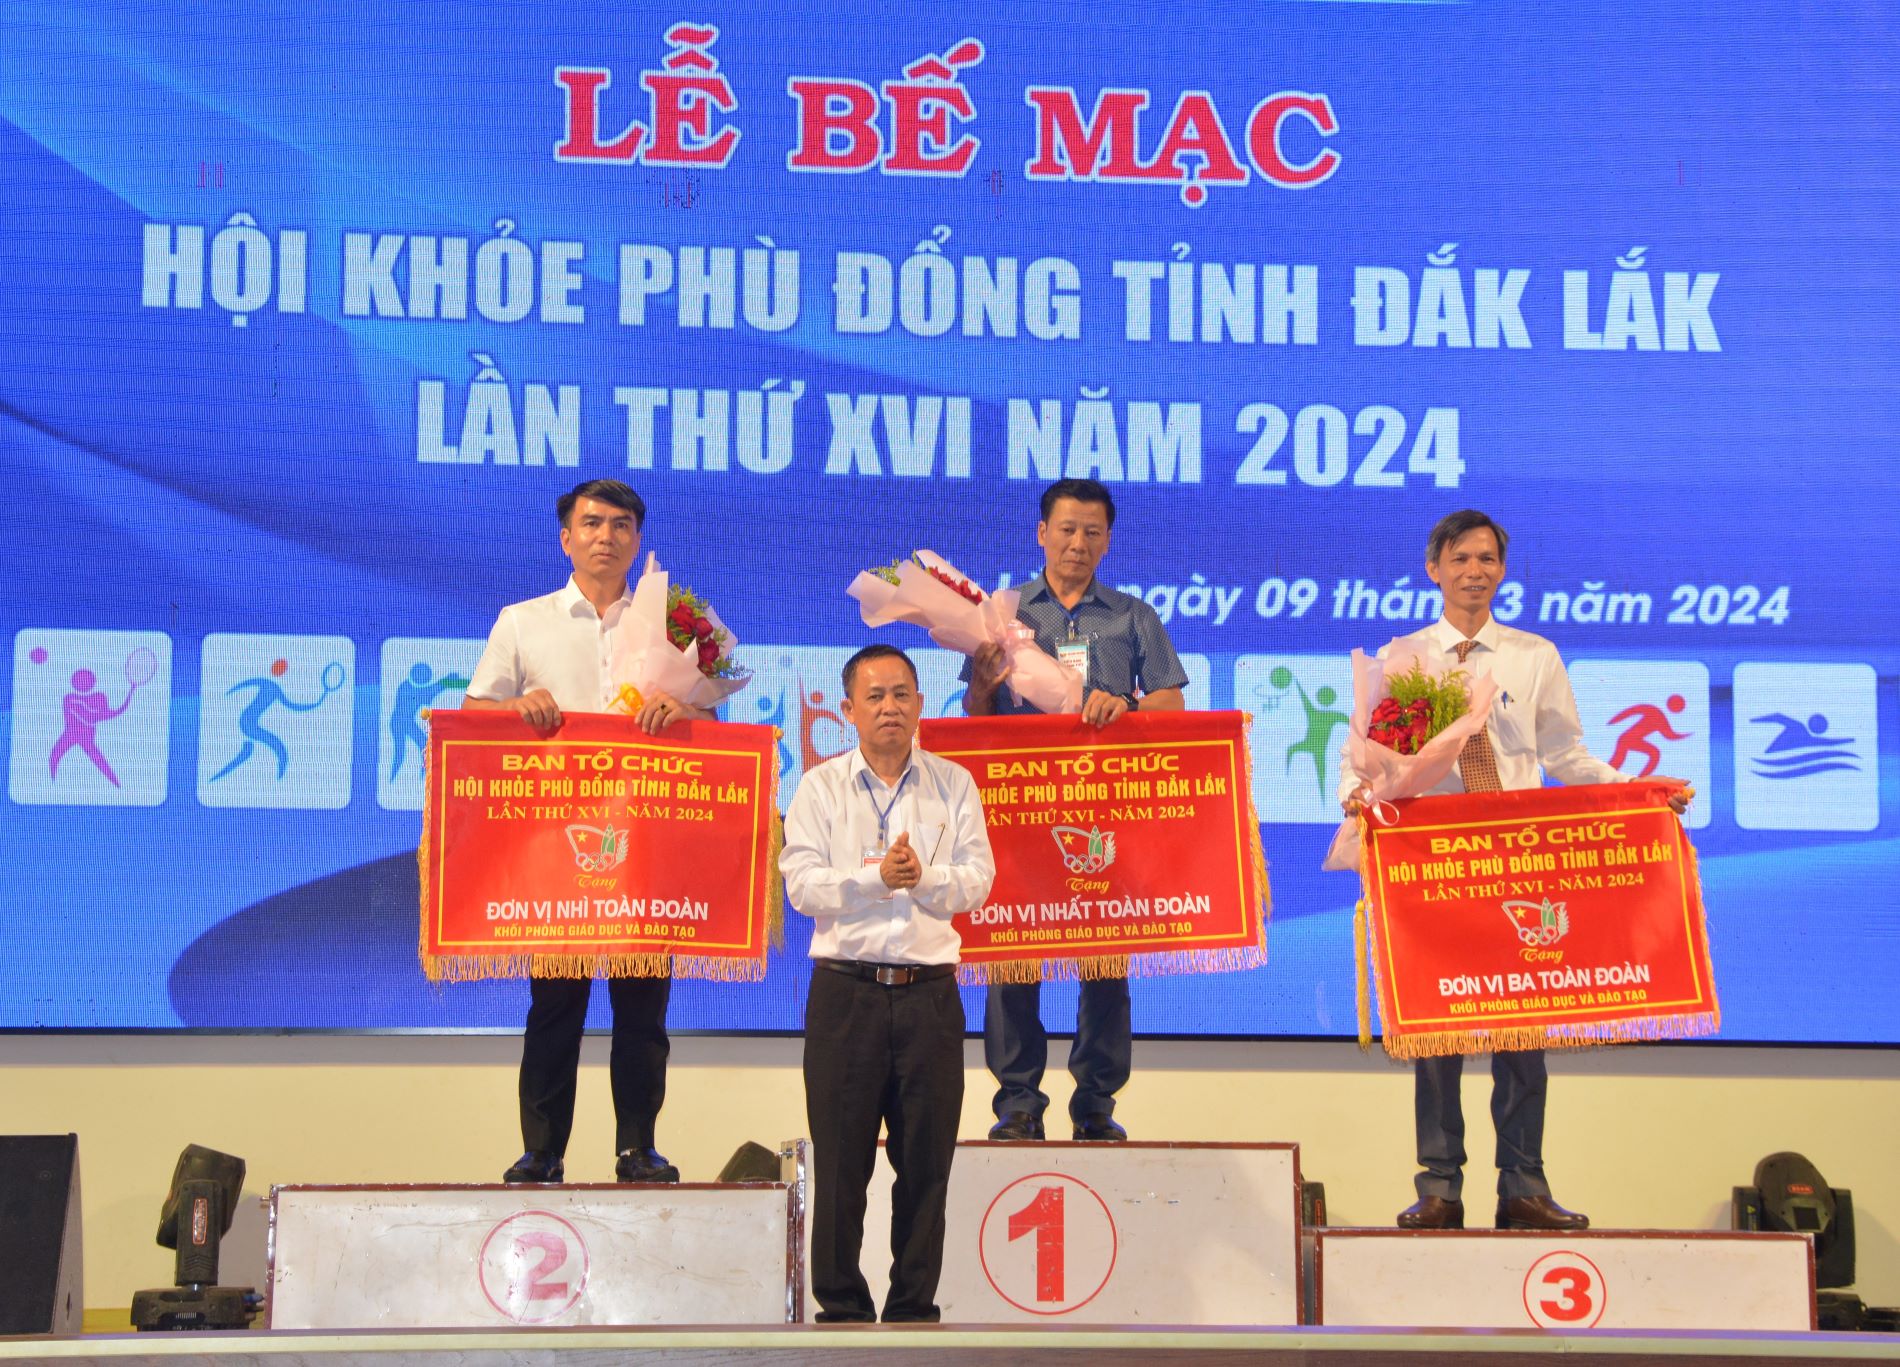 Bế mạc Hội khỏe Phù Đổng tỉnh Đắk Lắk lần thứ XVI – năm 2024